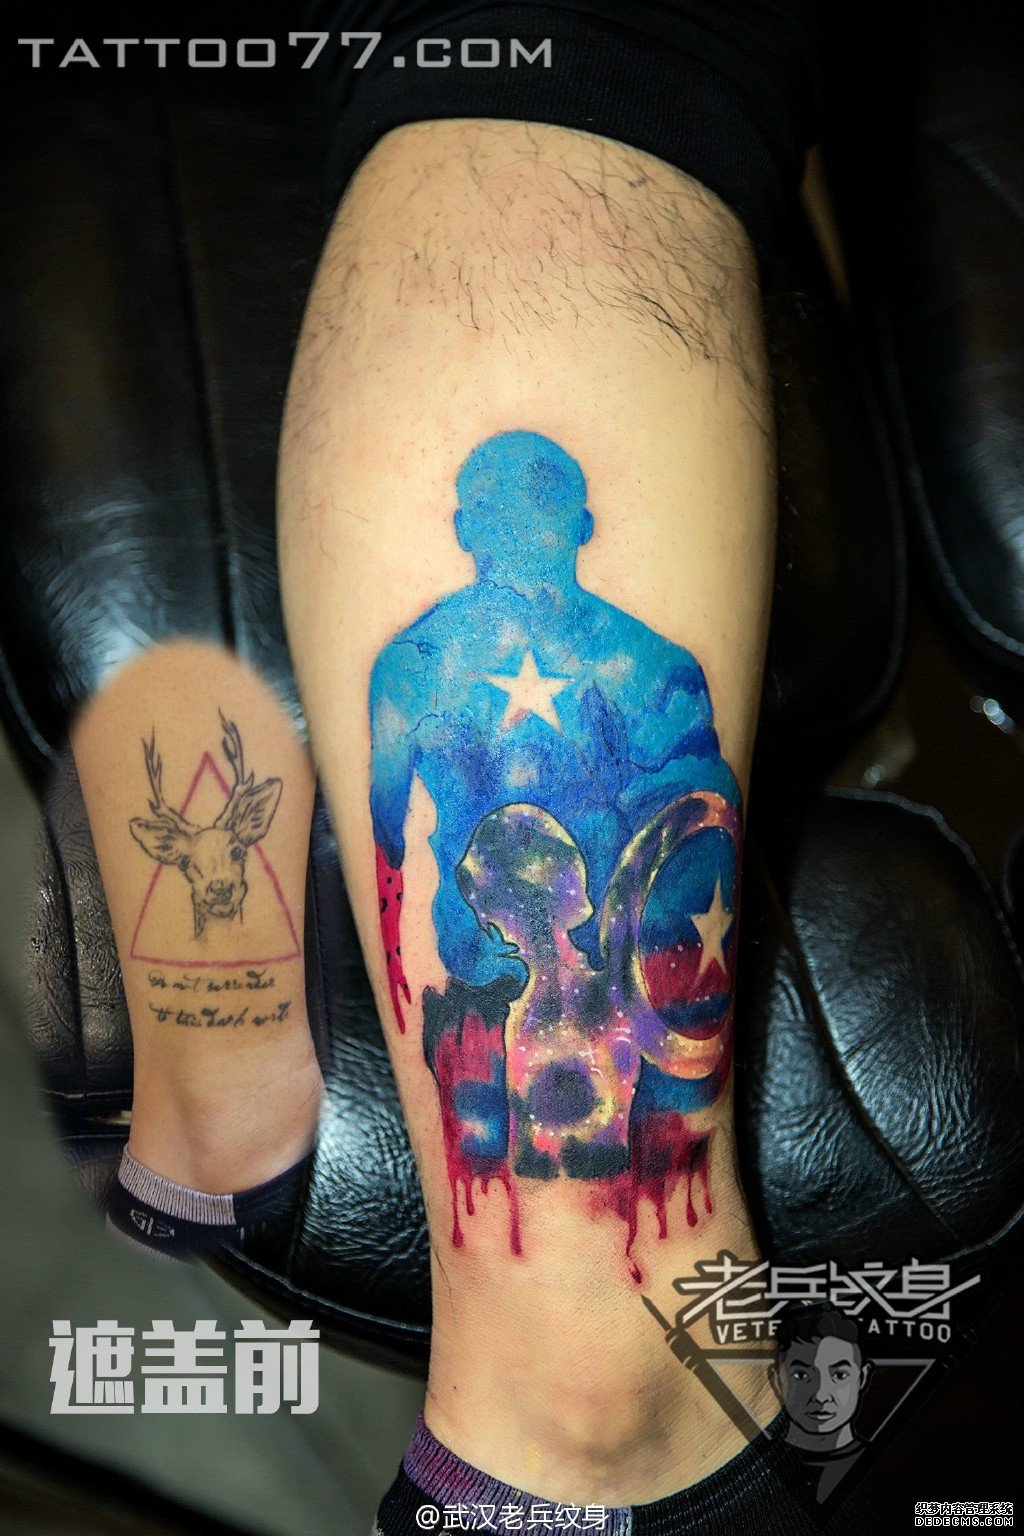 小腿星空人物纹身图案作品遮盖旧纹身